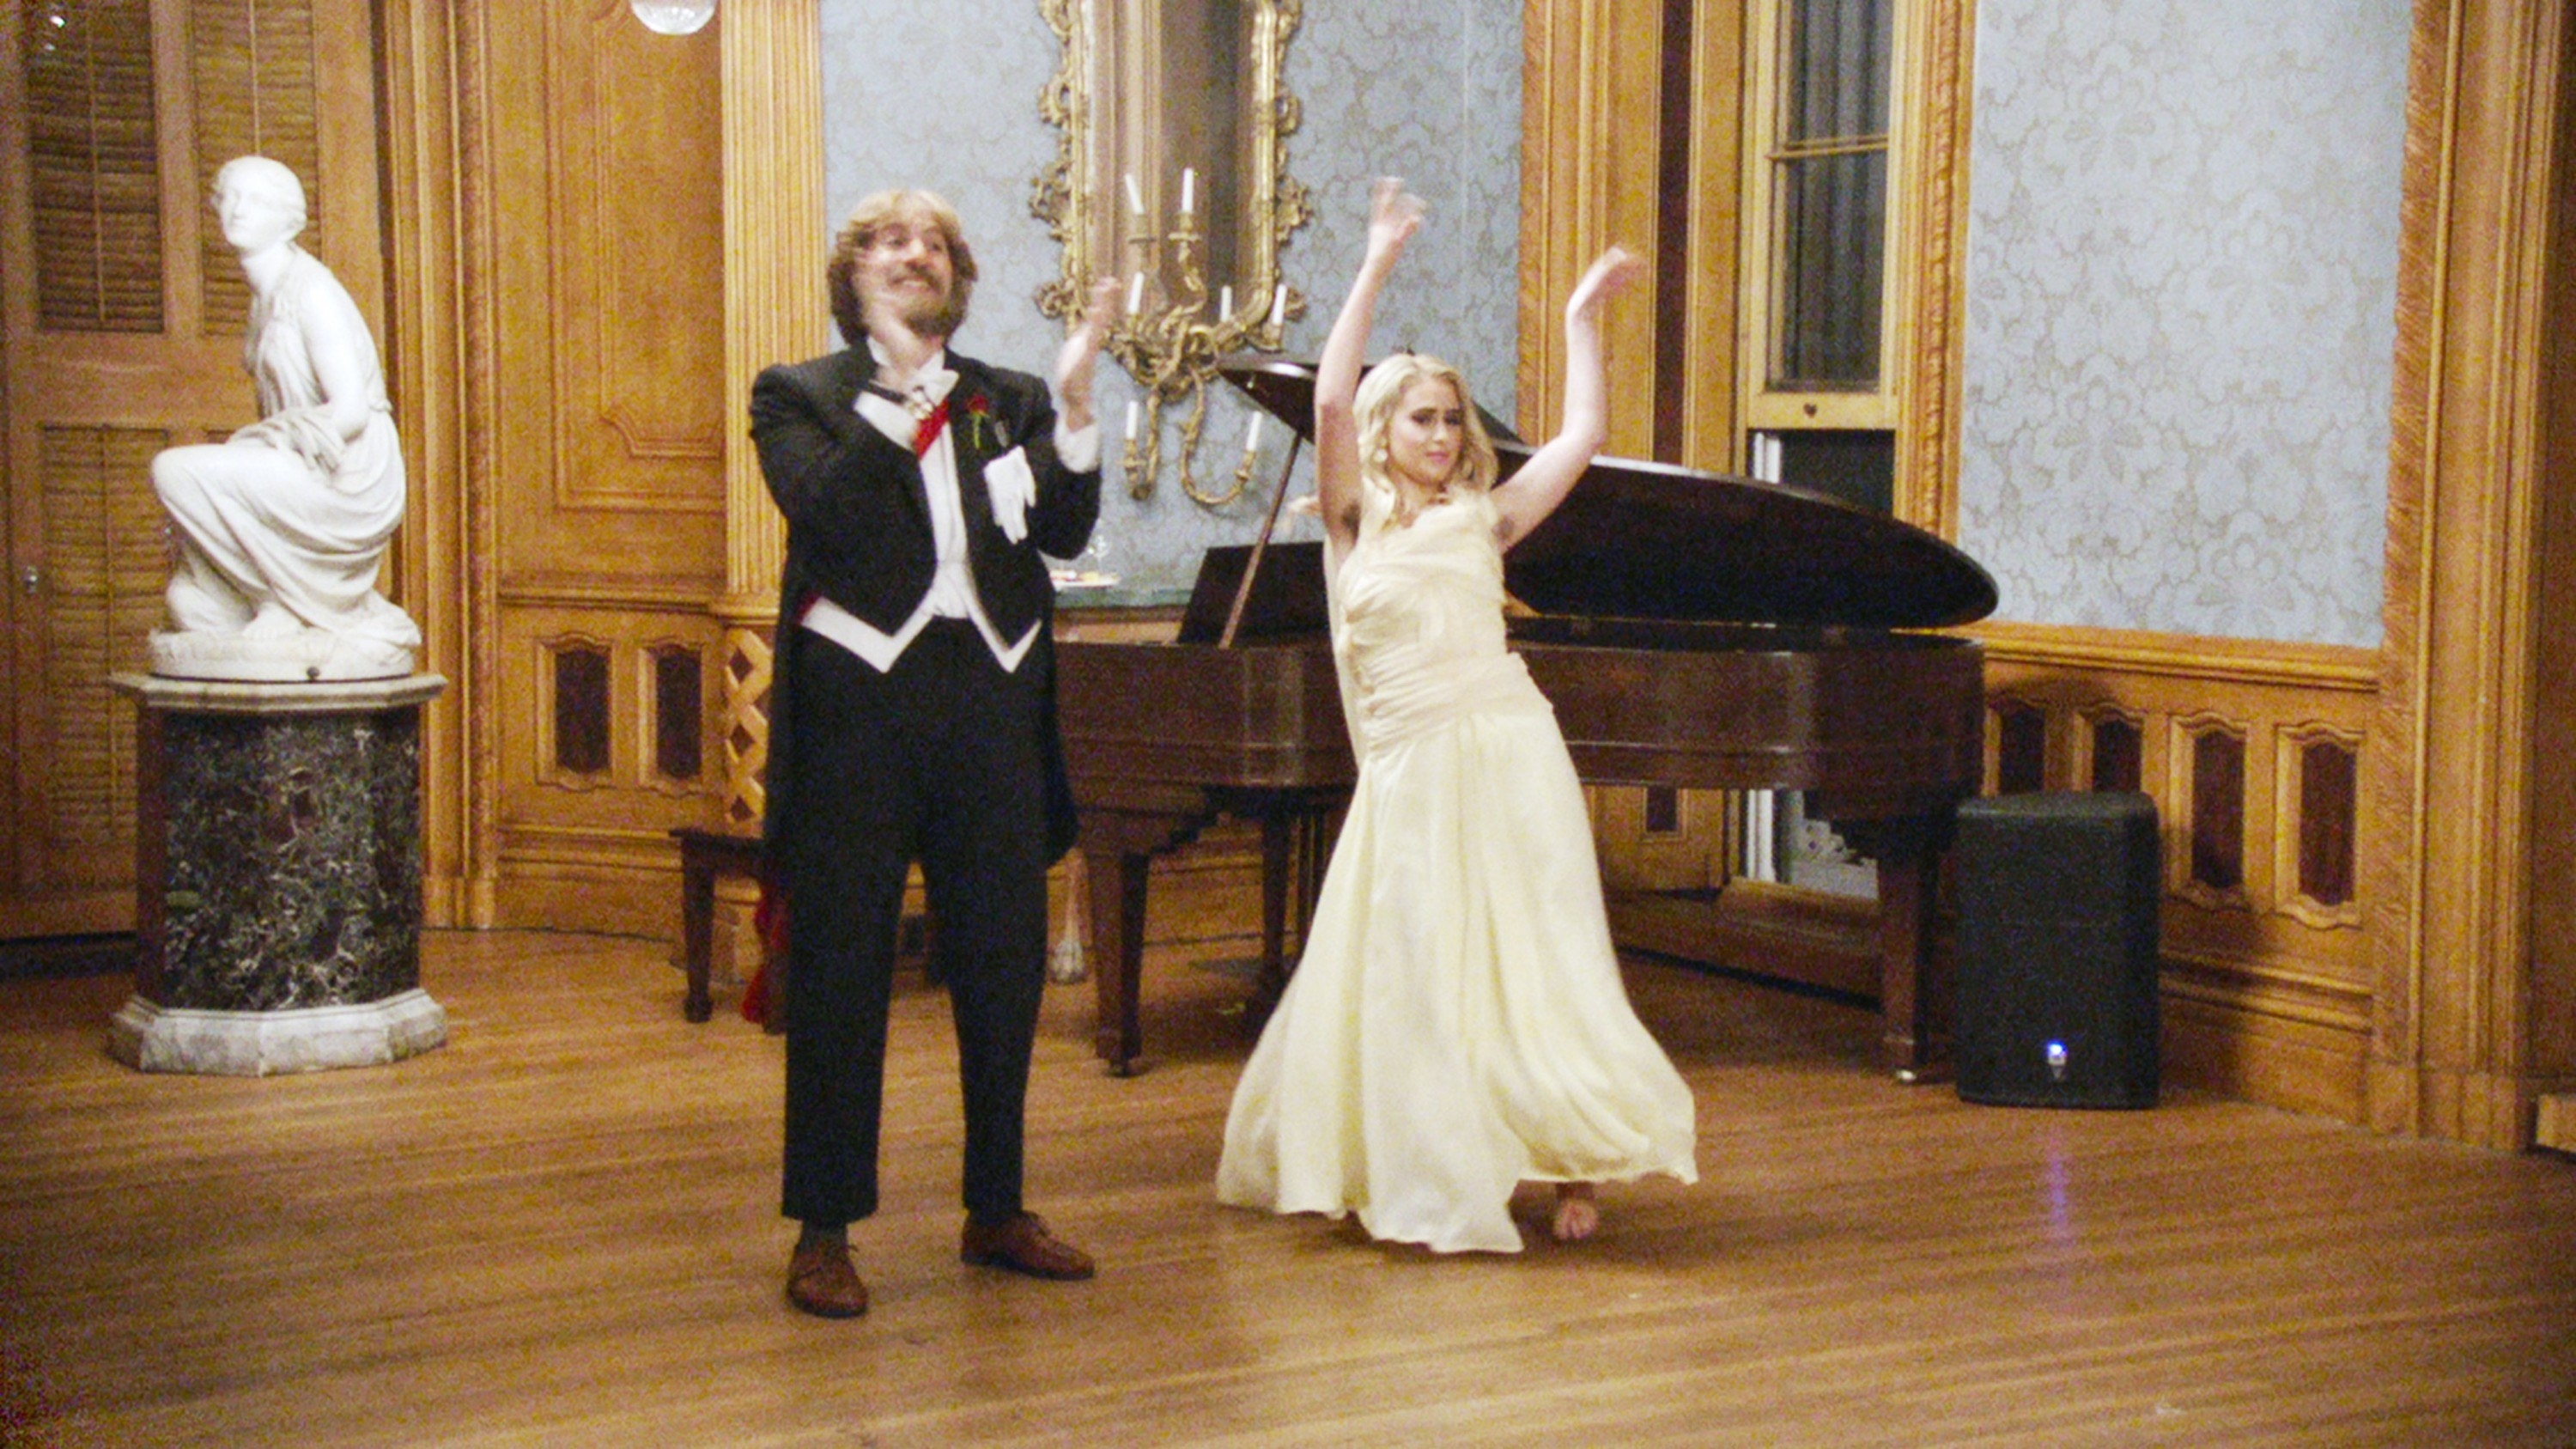 Sacha Baron Cohen and Maria Bakalova dance together in formalwear in a ballroom